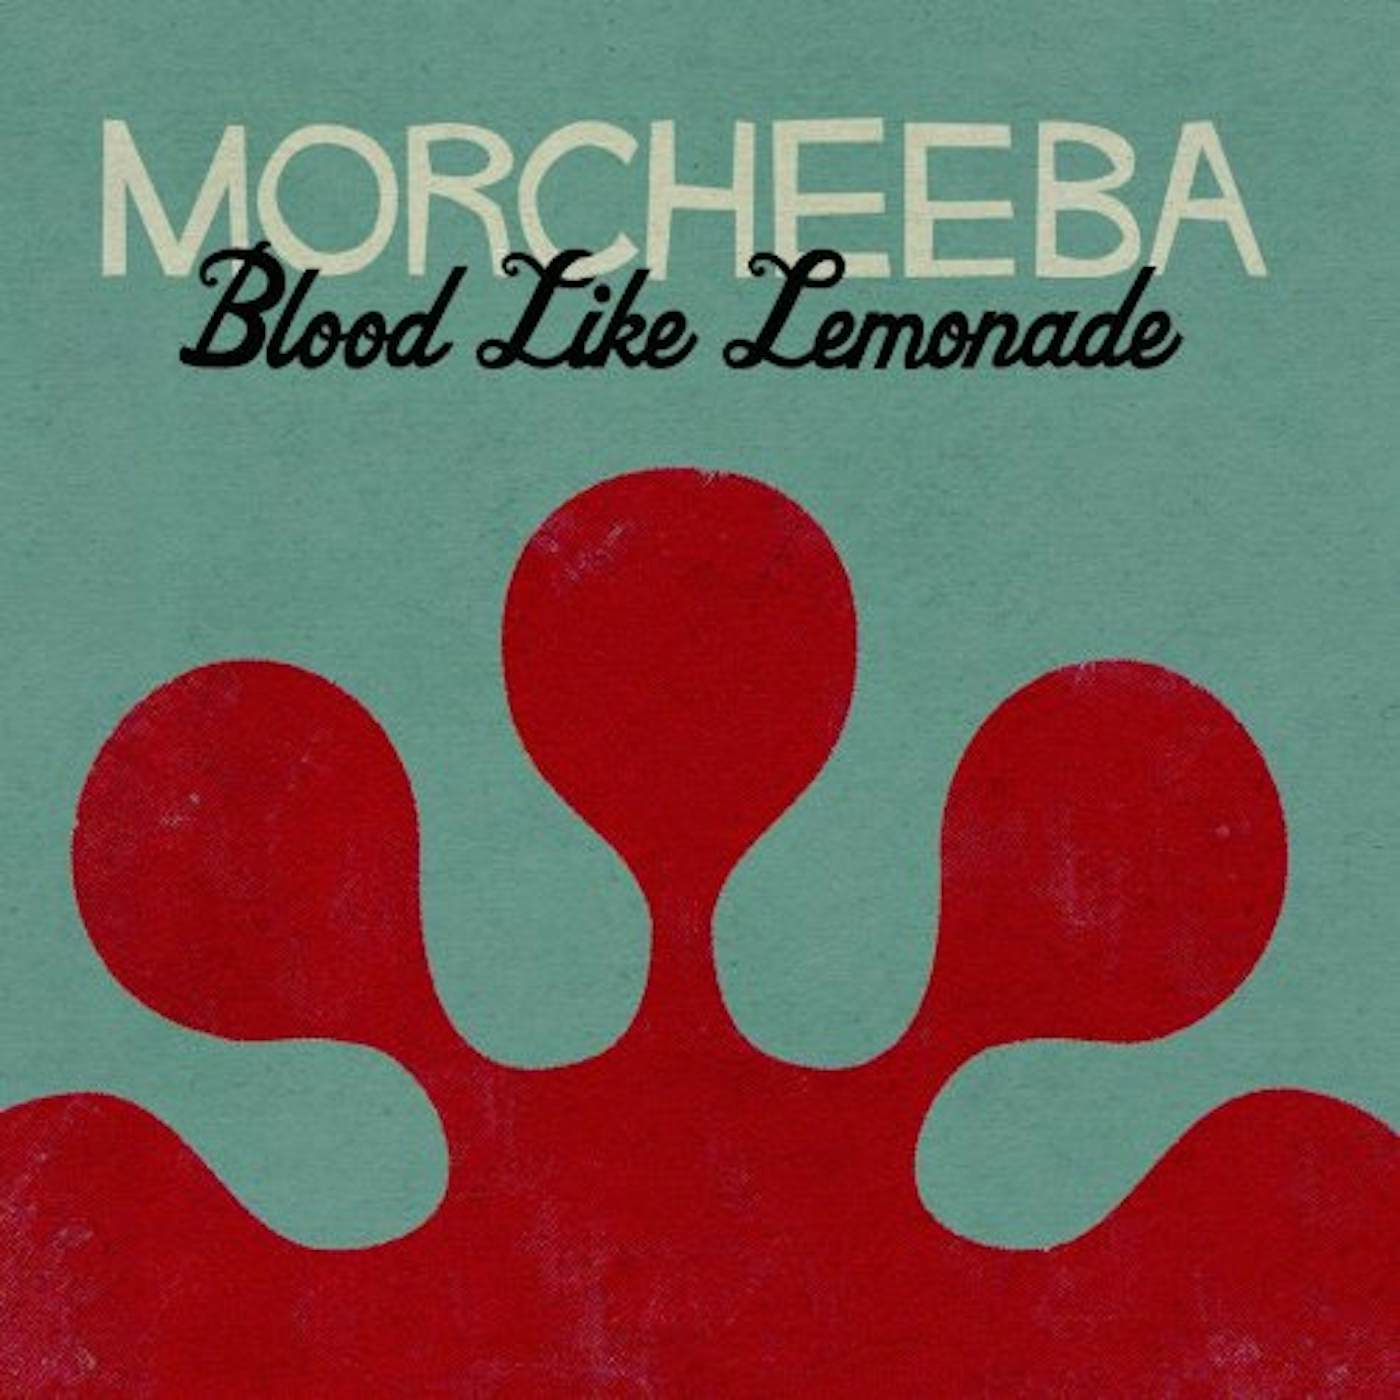 Morcheeba BLOOD LIKE LEMONADE CD